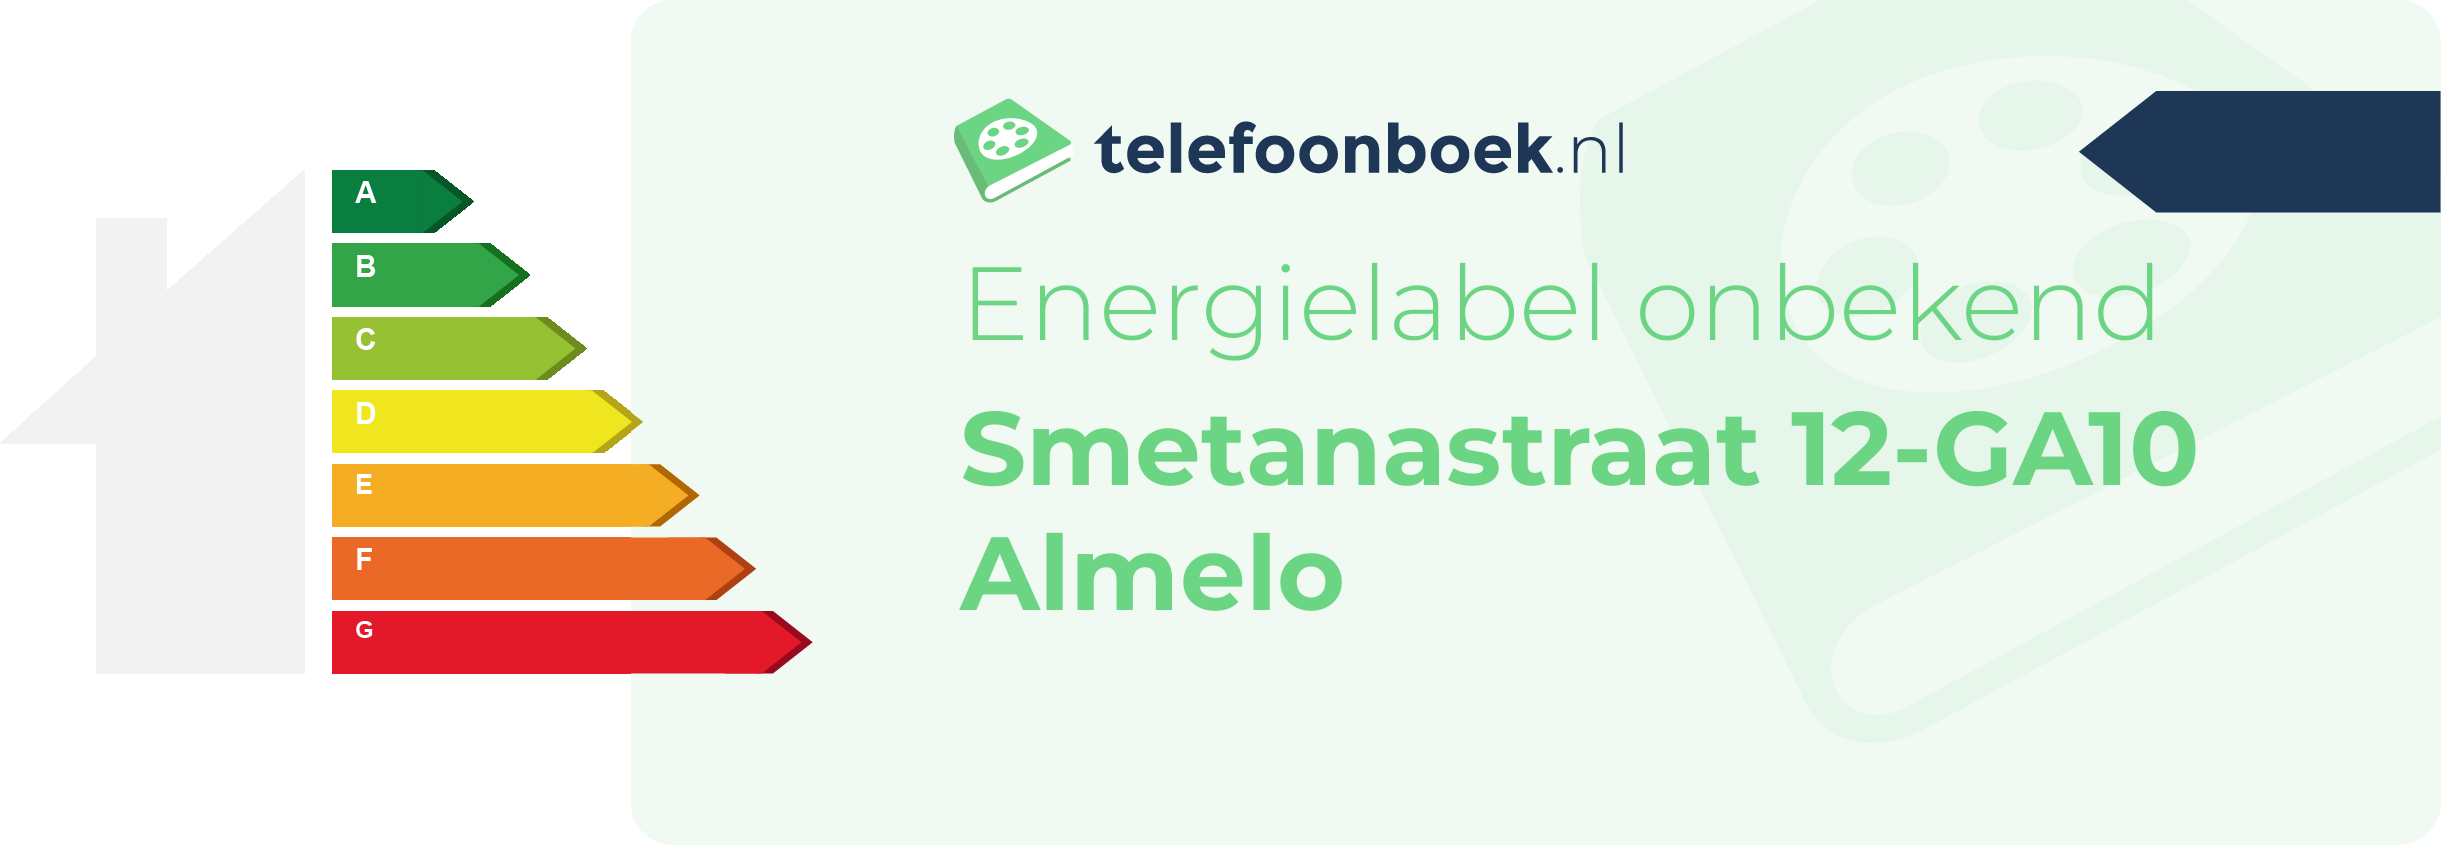 Energielabel Smetanastraat 12-GA10 Almelo